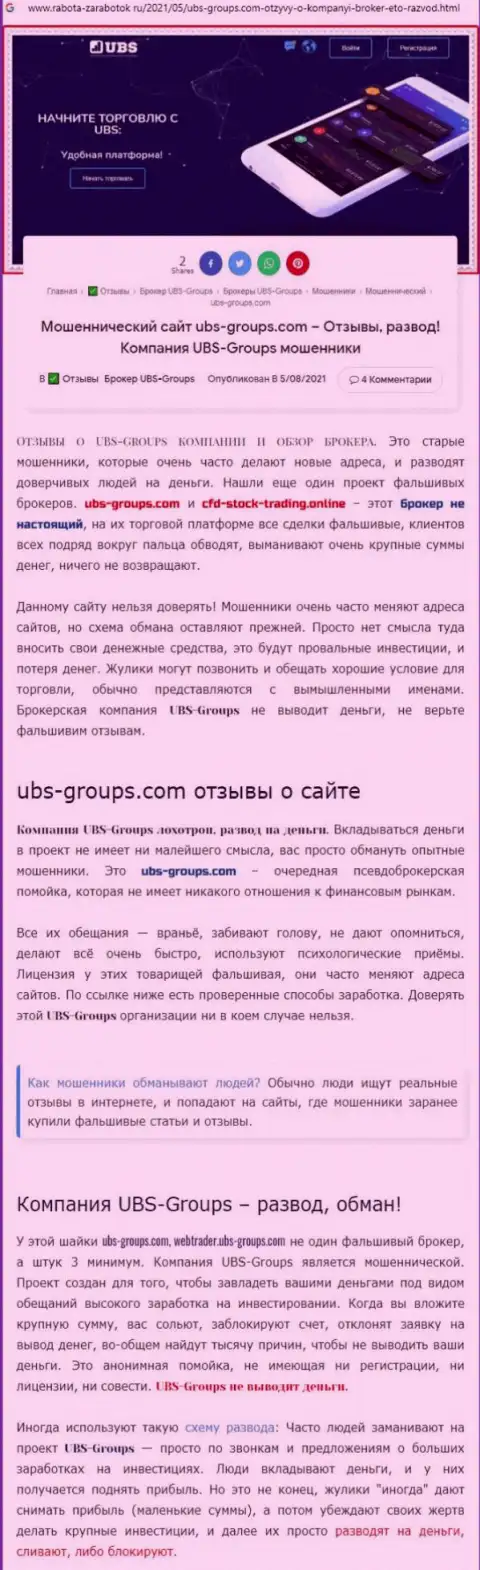 Подробный разбор моделей развода UBS-Groups (обзор)